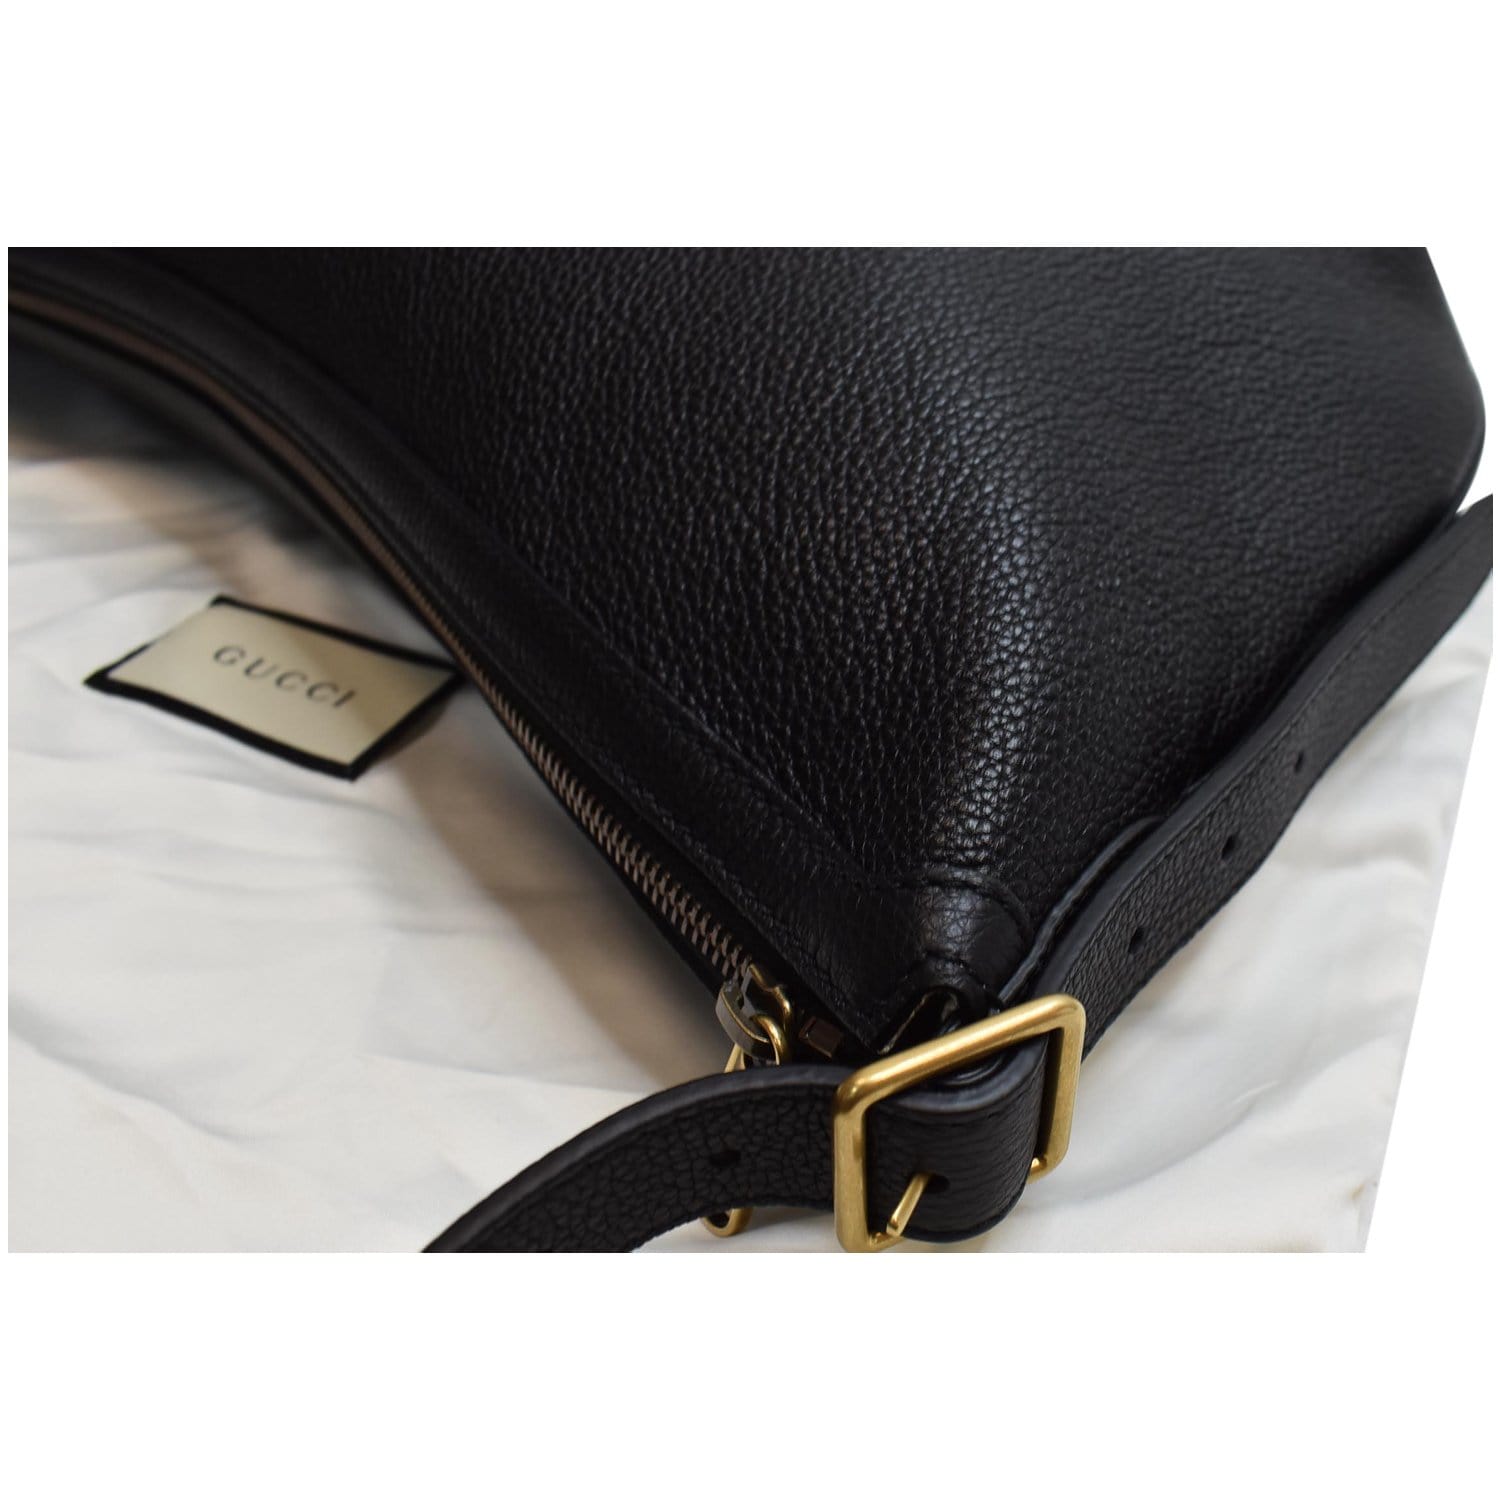 Gucci Half Moon Logo Calfskin Leather Hobo Shoulder Bag